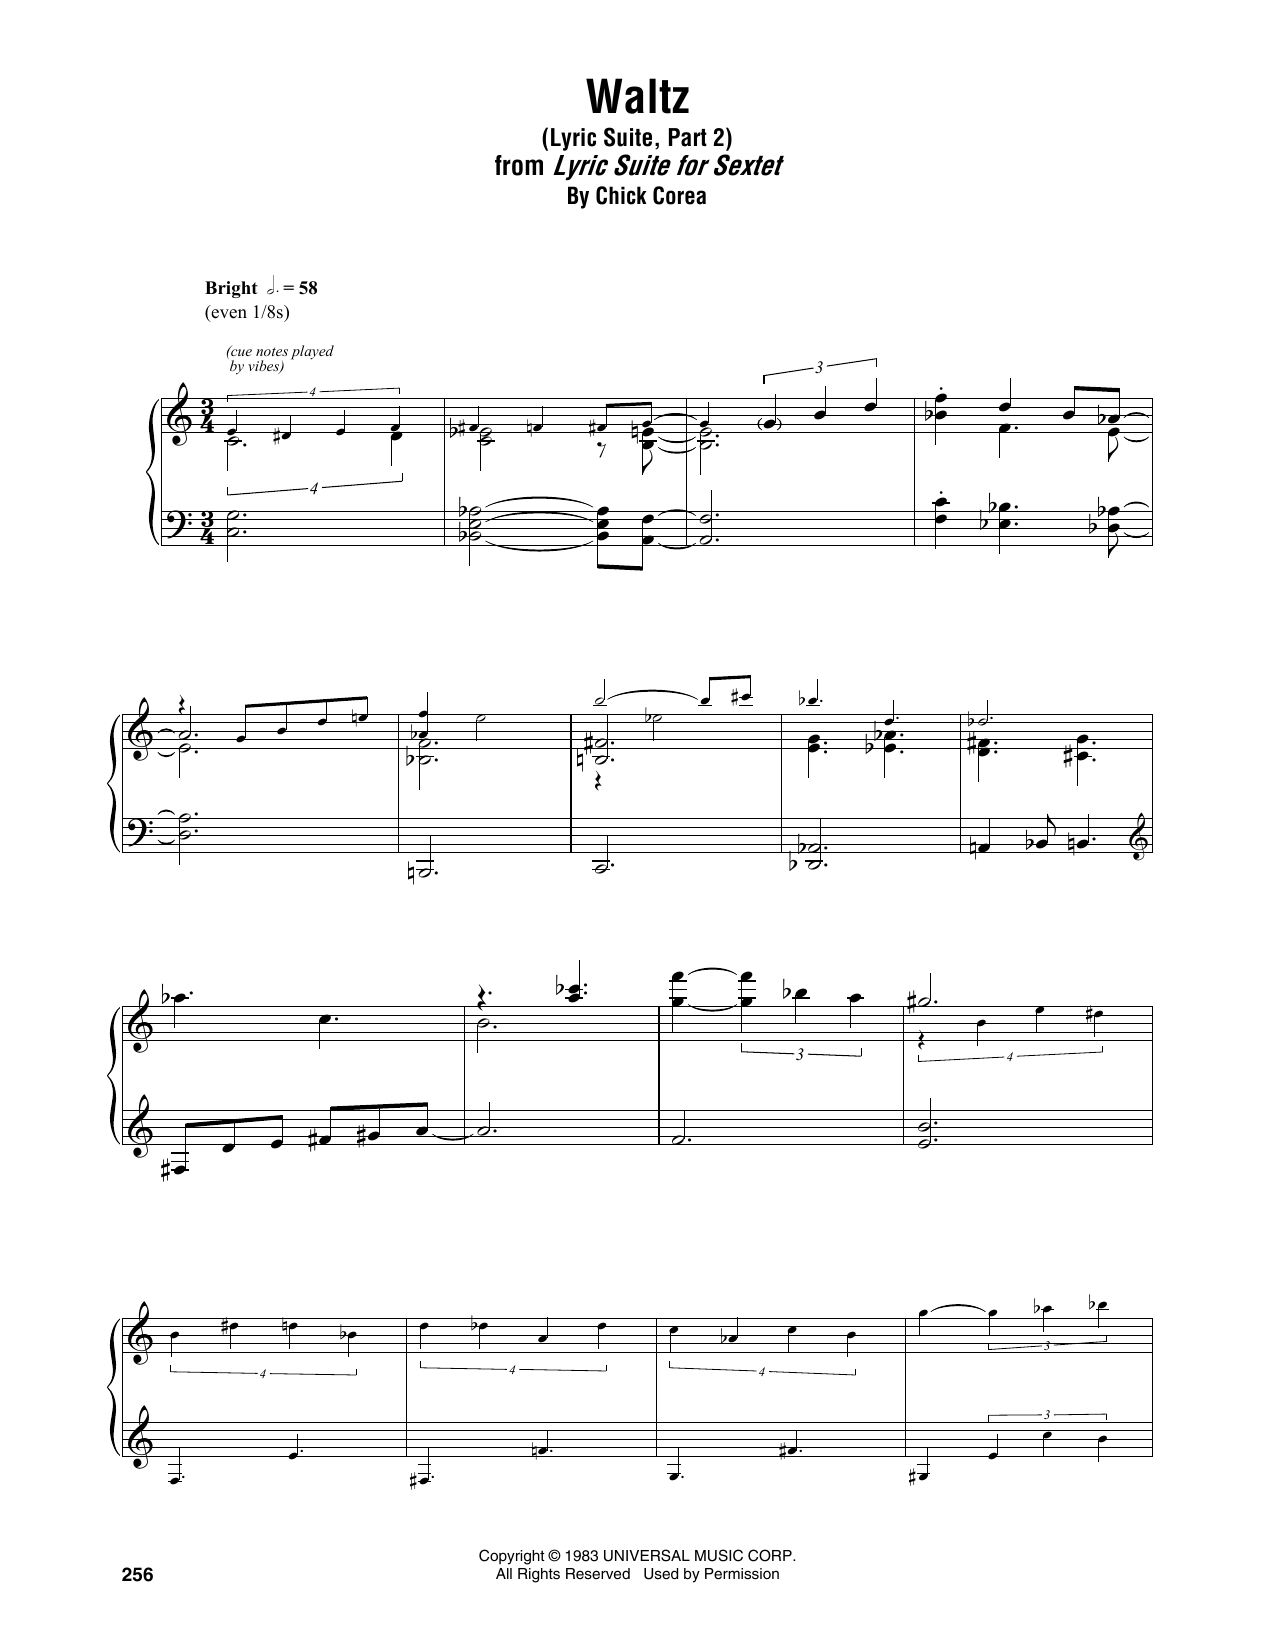 Download Chick Corea Waltz (Lyric Suite, Part 2) Sheet Music